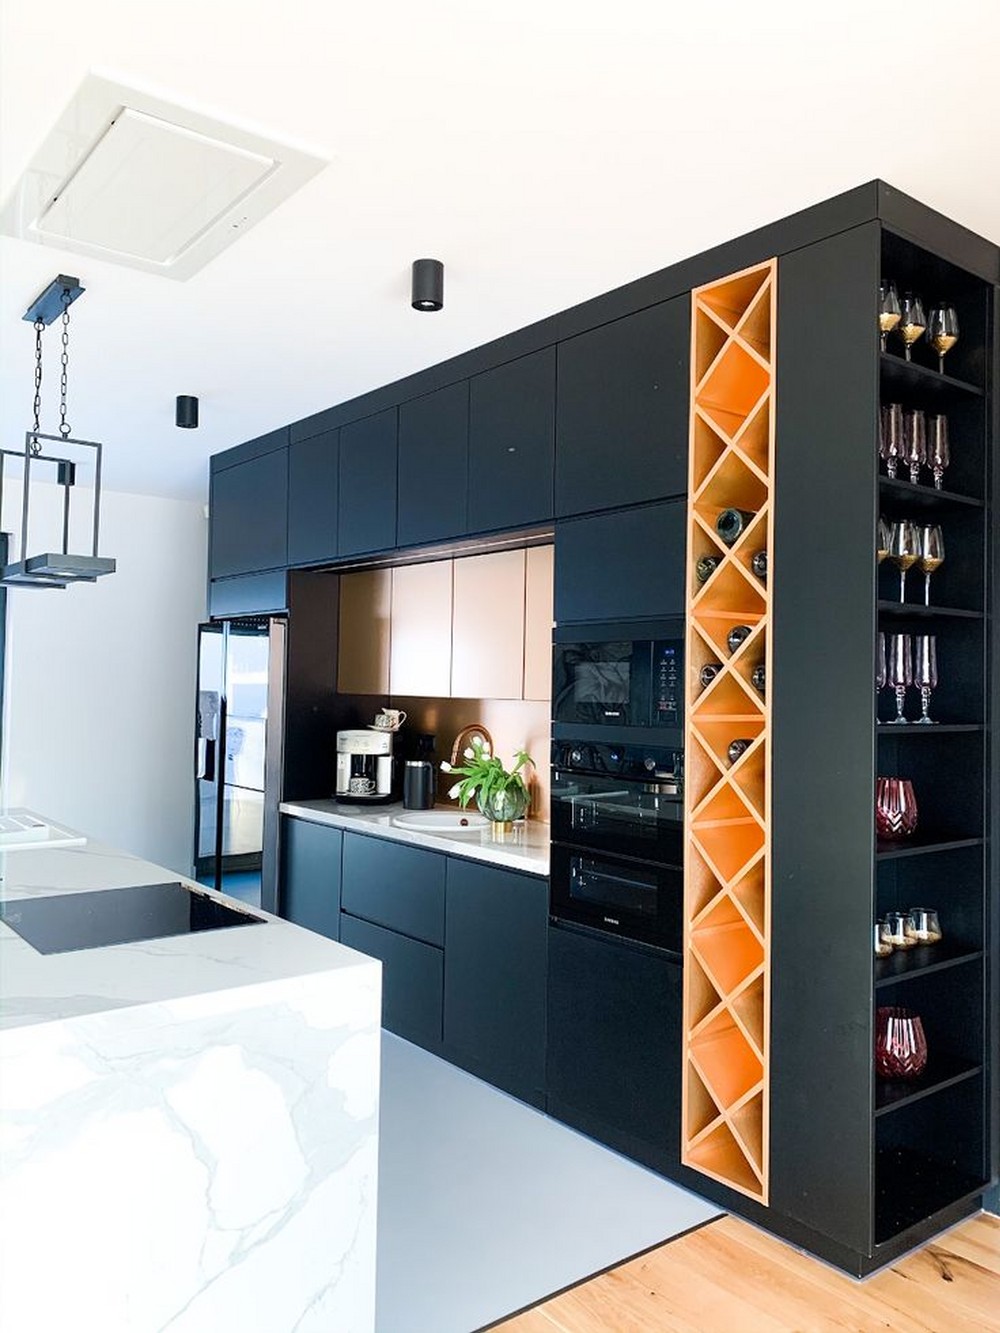 Бутылочница на всю высоту кухни, выполнена в контрастном цвете относительно черной кухни